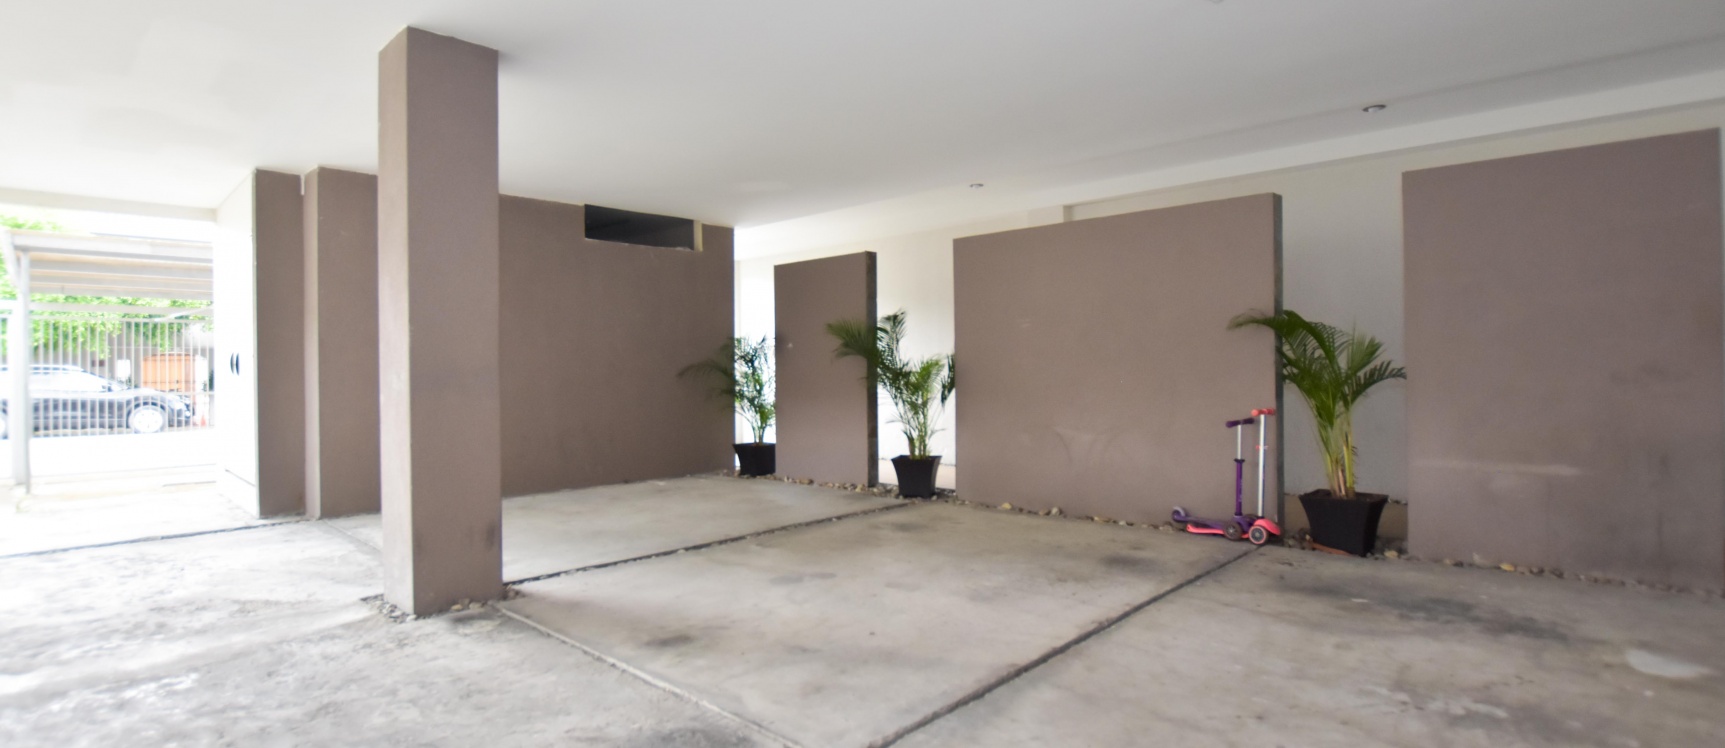 GeoBienes - Departamento en alquiler en urbanización Puerto Azul - Plusvalia Guayaquil Casas de venta y alquiler Inmobiliaria Ecuador